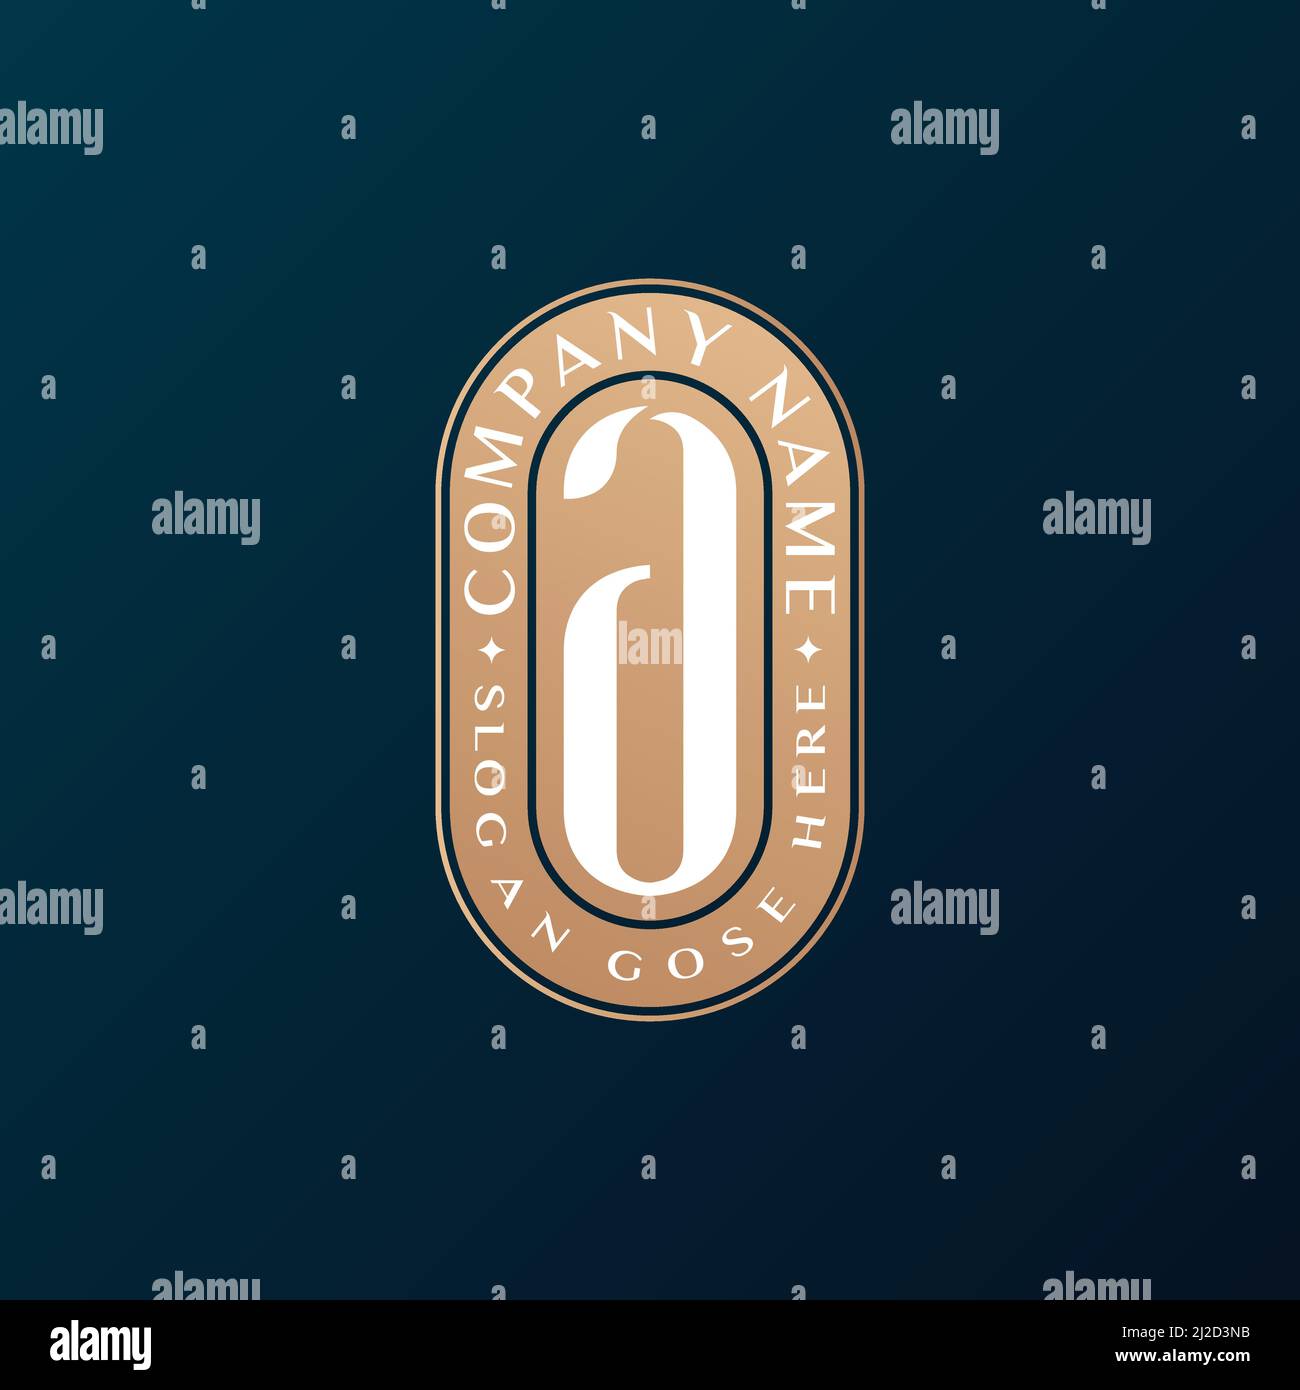 Abstrait Emblem Premium luxe identité d'entreprise élégante lettre A logo design Illustration de Vecteur